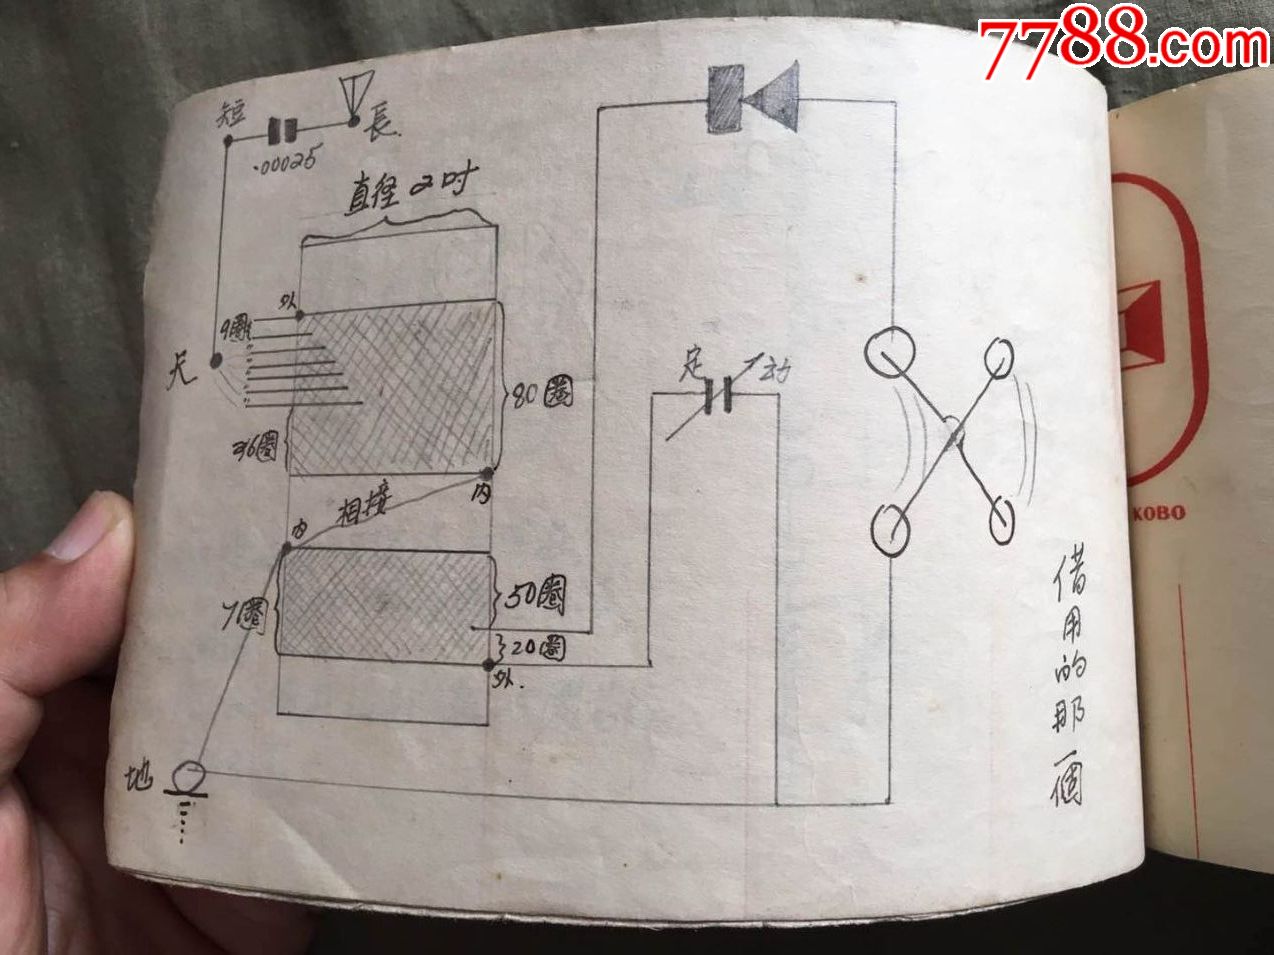 民国时期老矿石收音机工程师设计电路图原稿,手稿